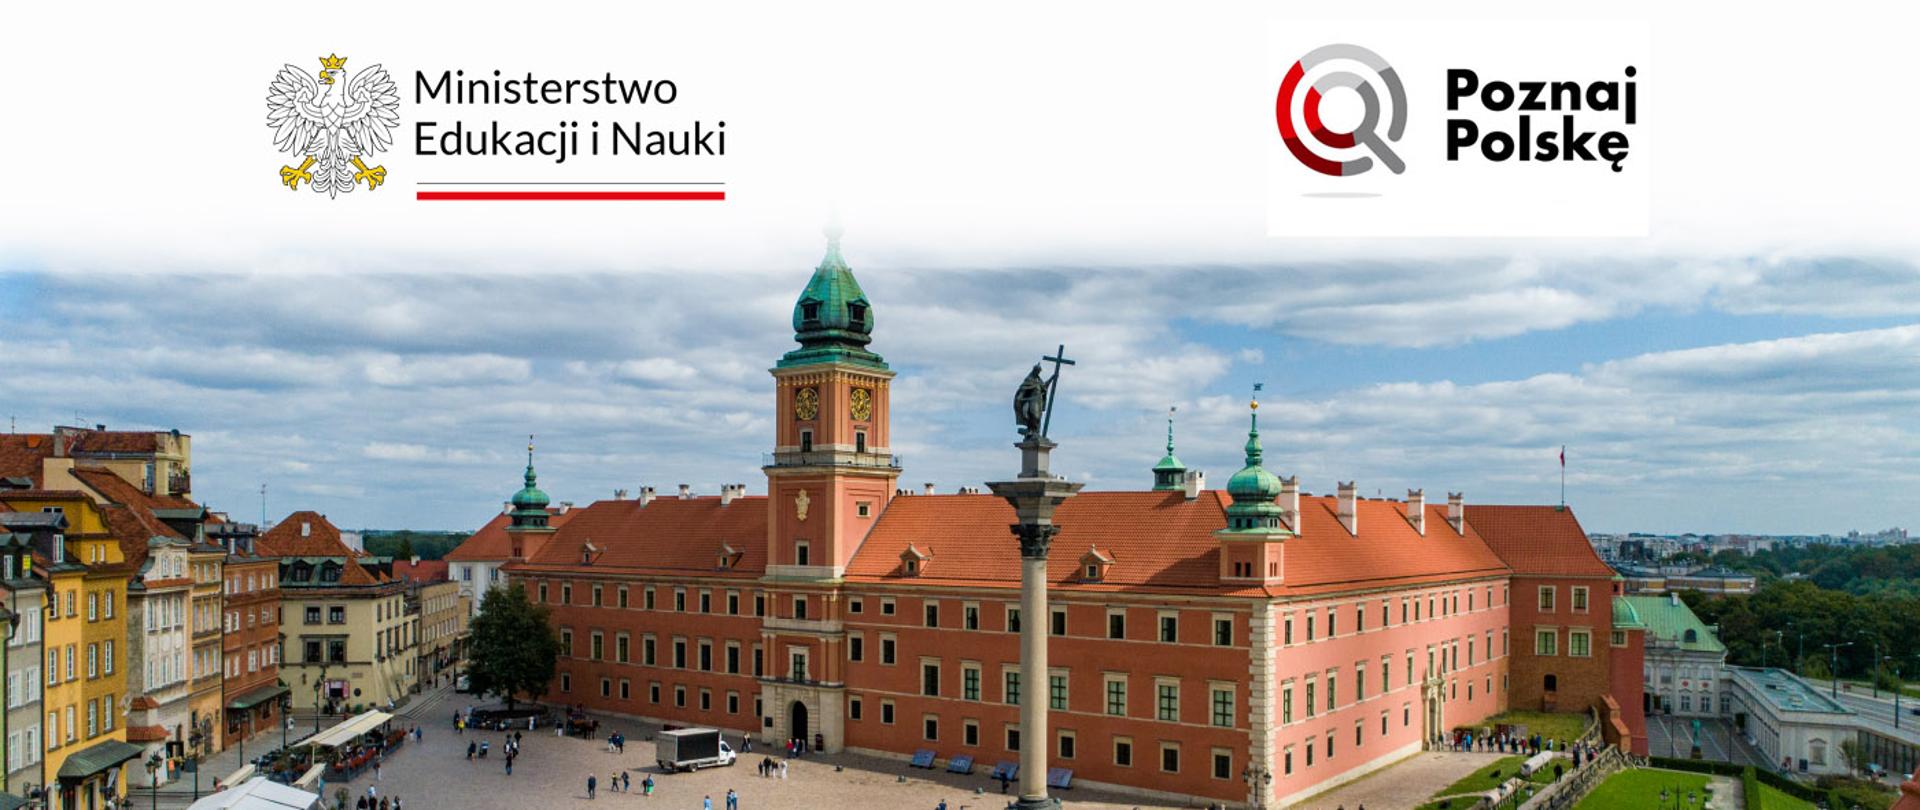 Zdjęcie przedstawia Zamek Królewski w Warszawie, na górze logotypy Ministerstwa Edukacji i Nauki, oraz Programu Poznaj Polskę